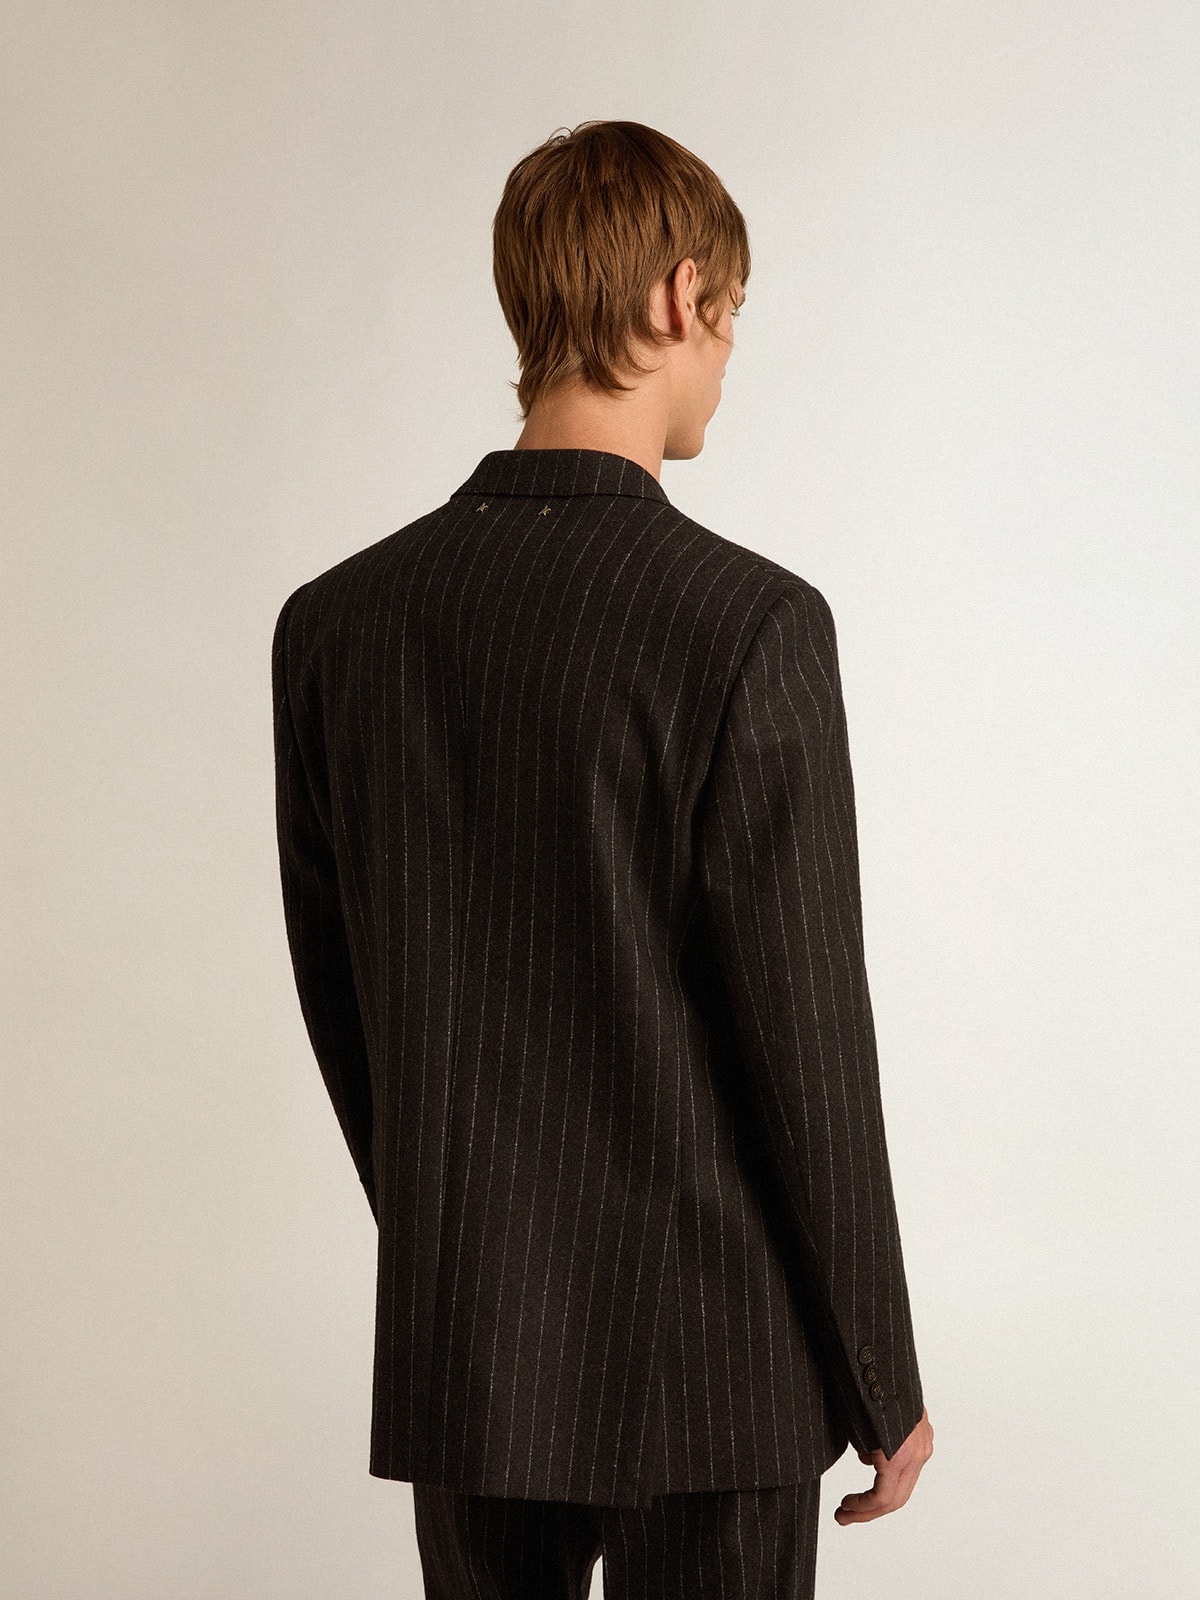 Men’s double-breasted blazer in gray melange wool - 4